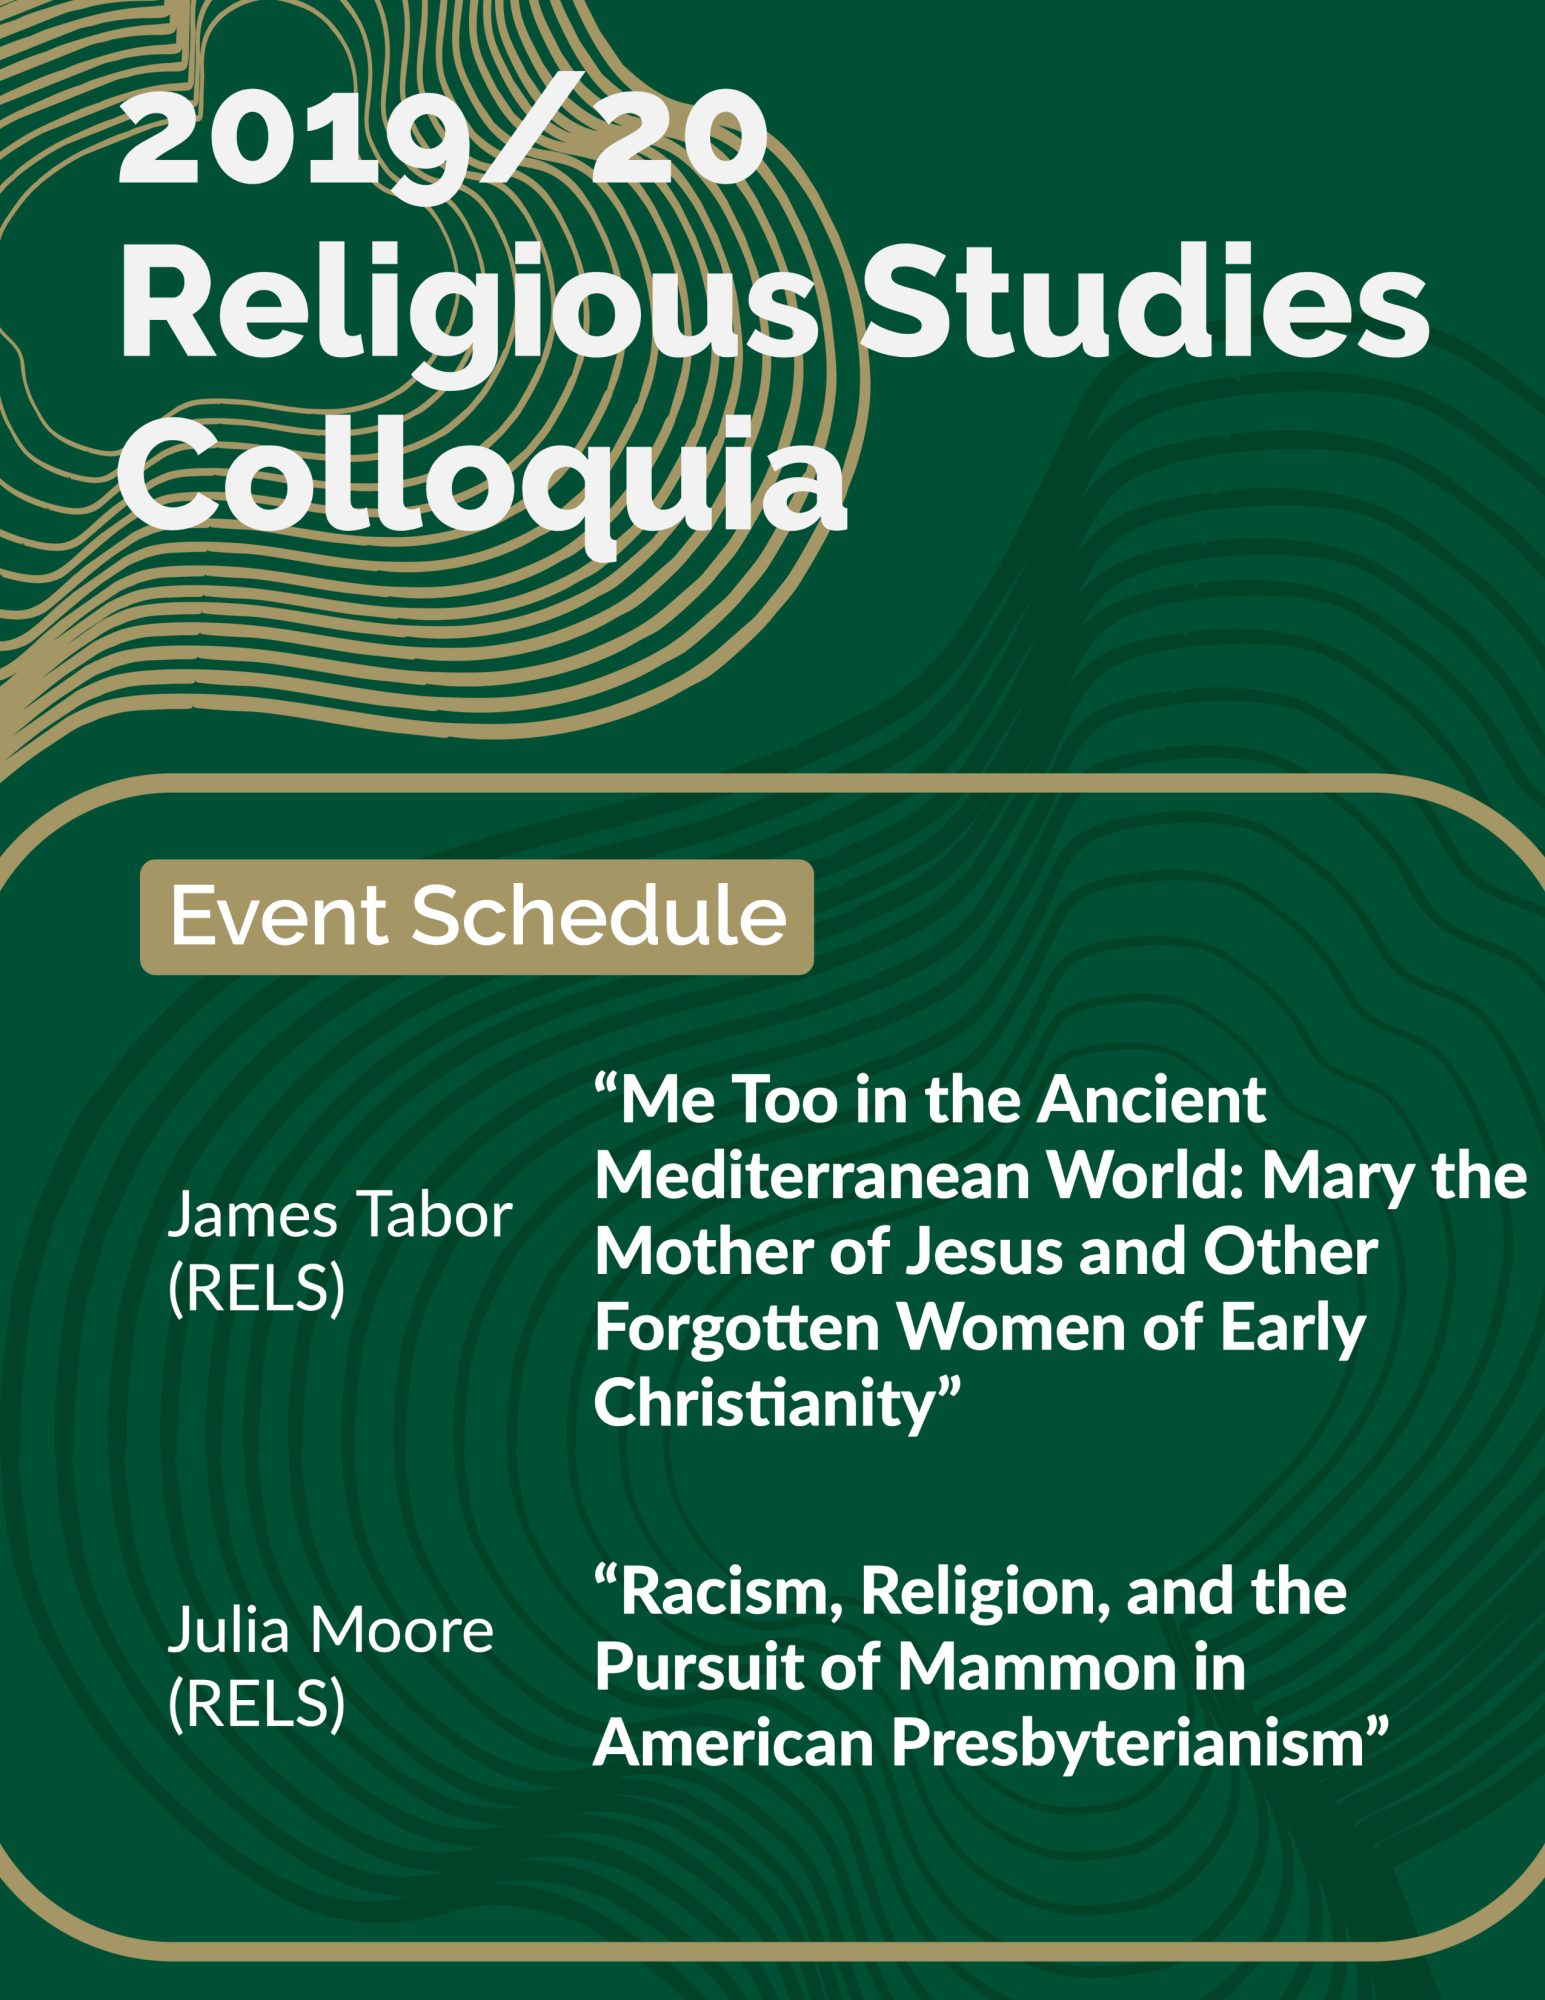 2019/20 Religious Studies Colloquia
Event Schedule